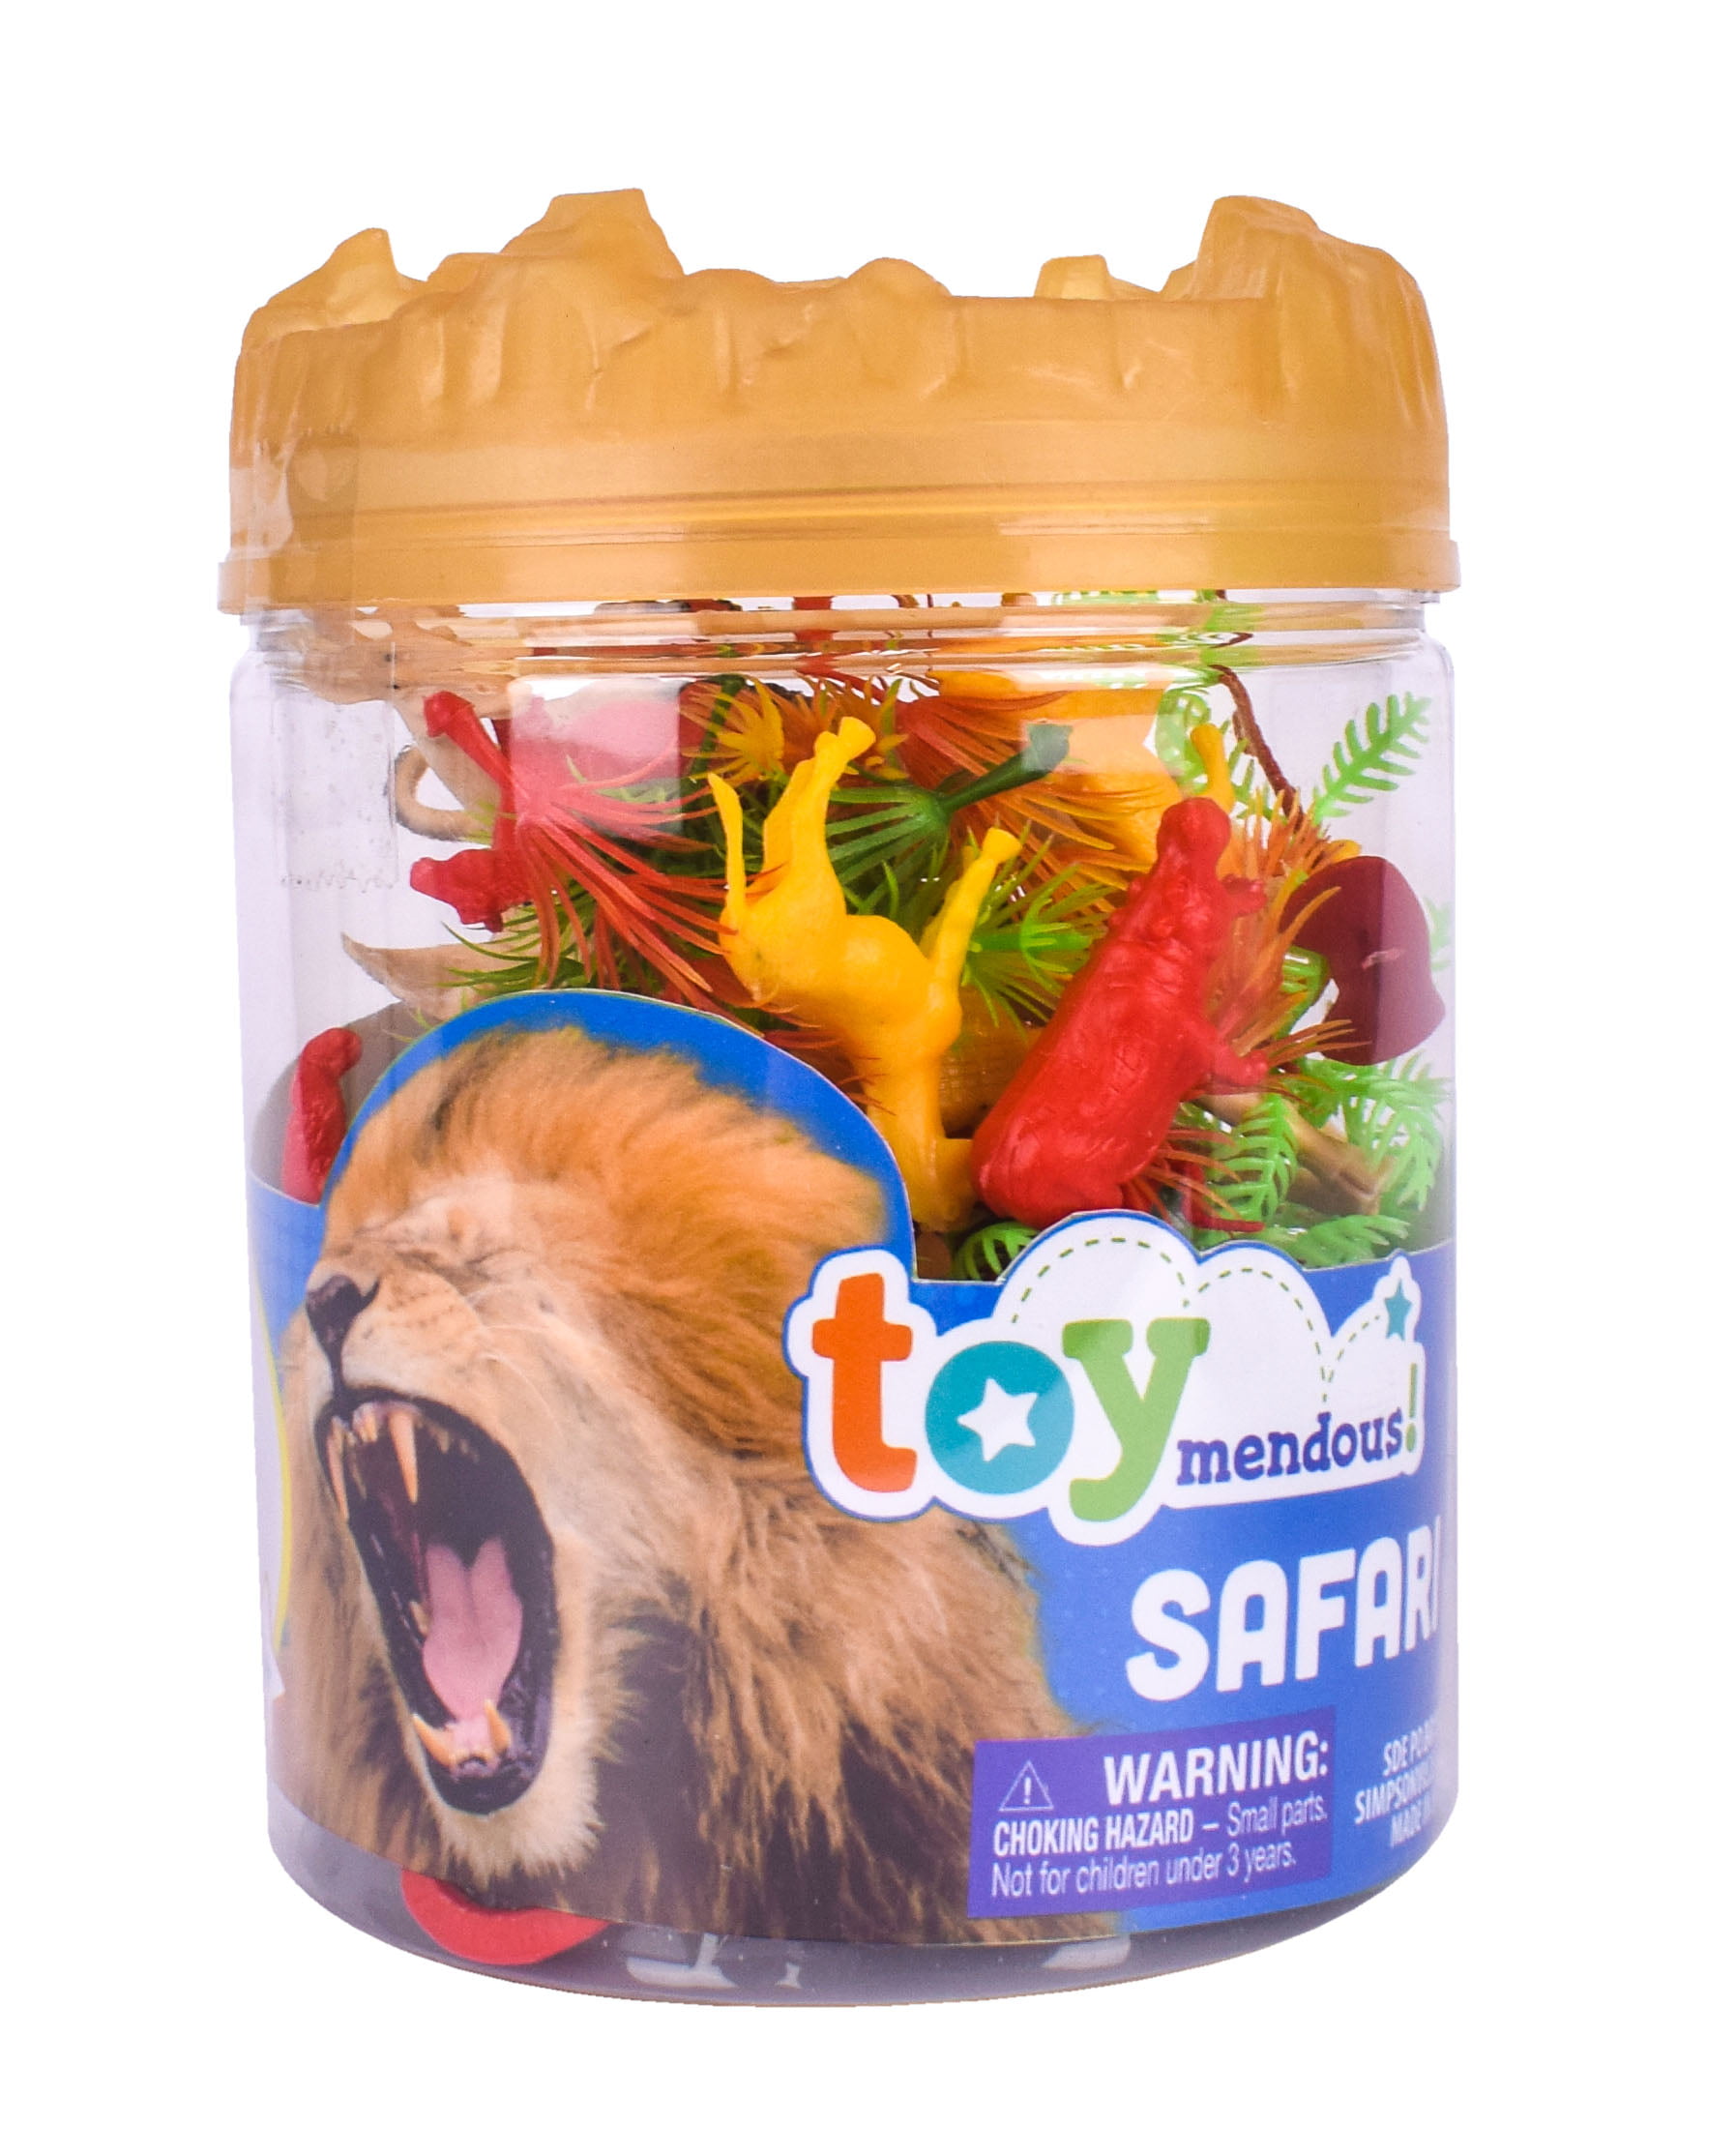 safari animals toys b&m